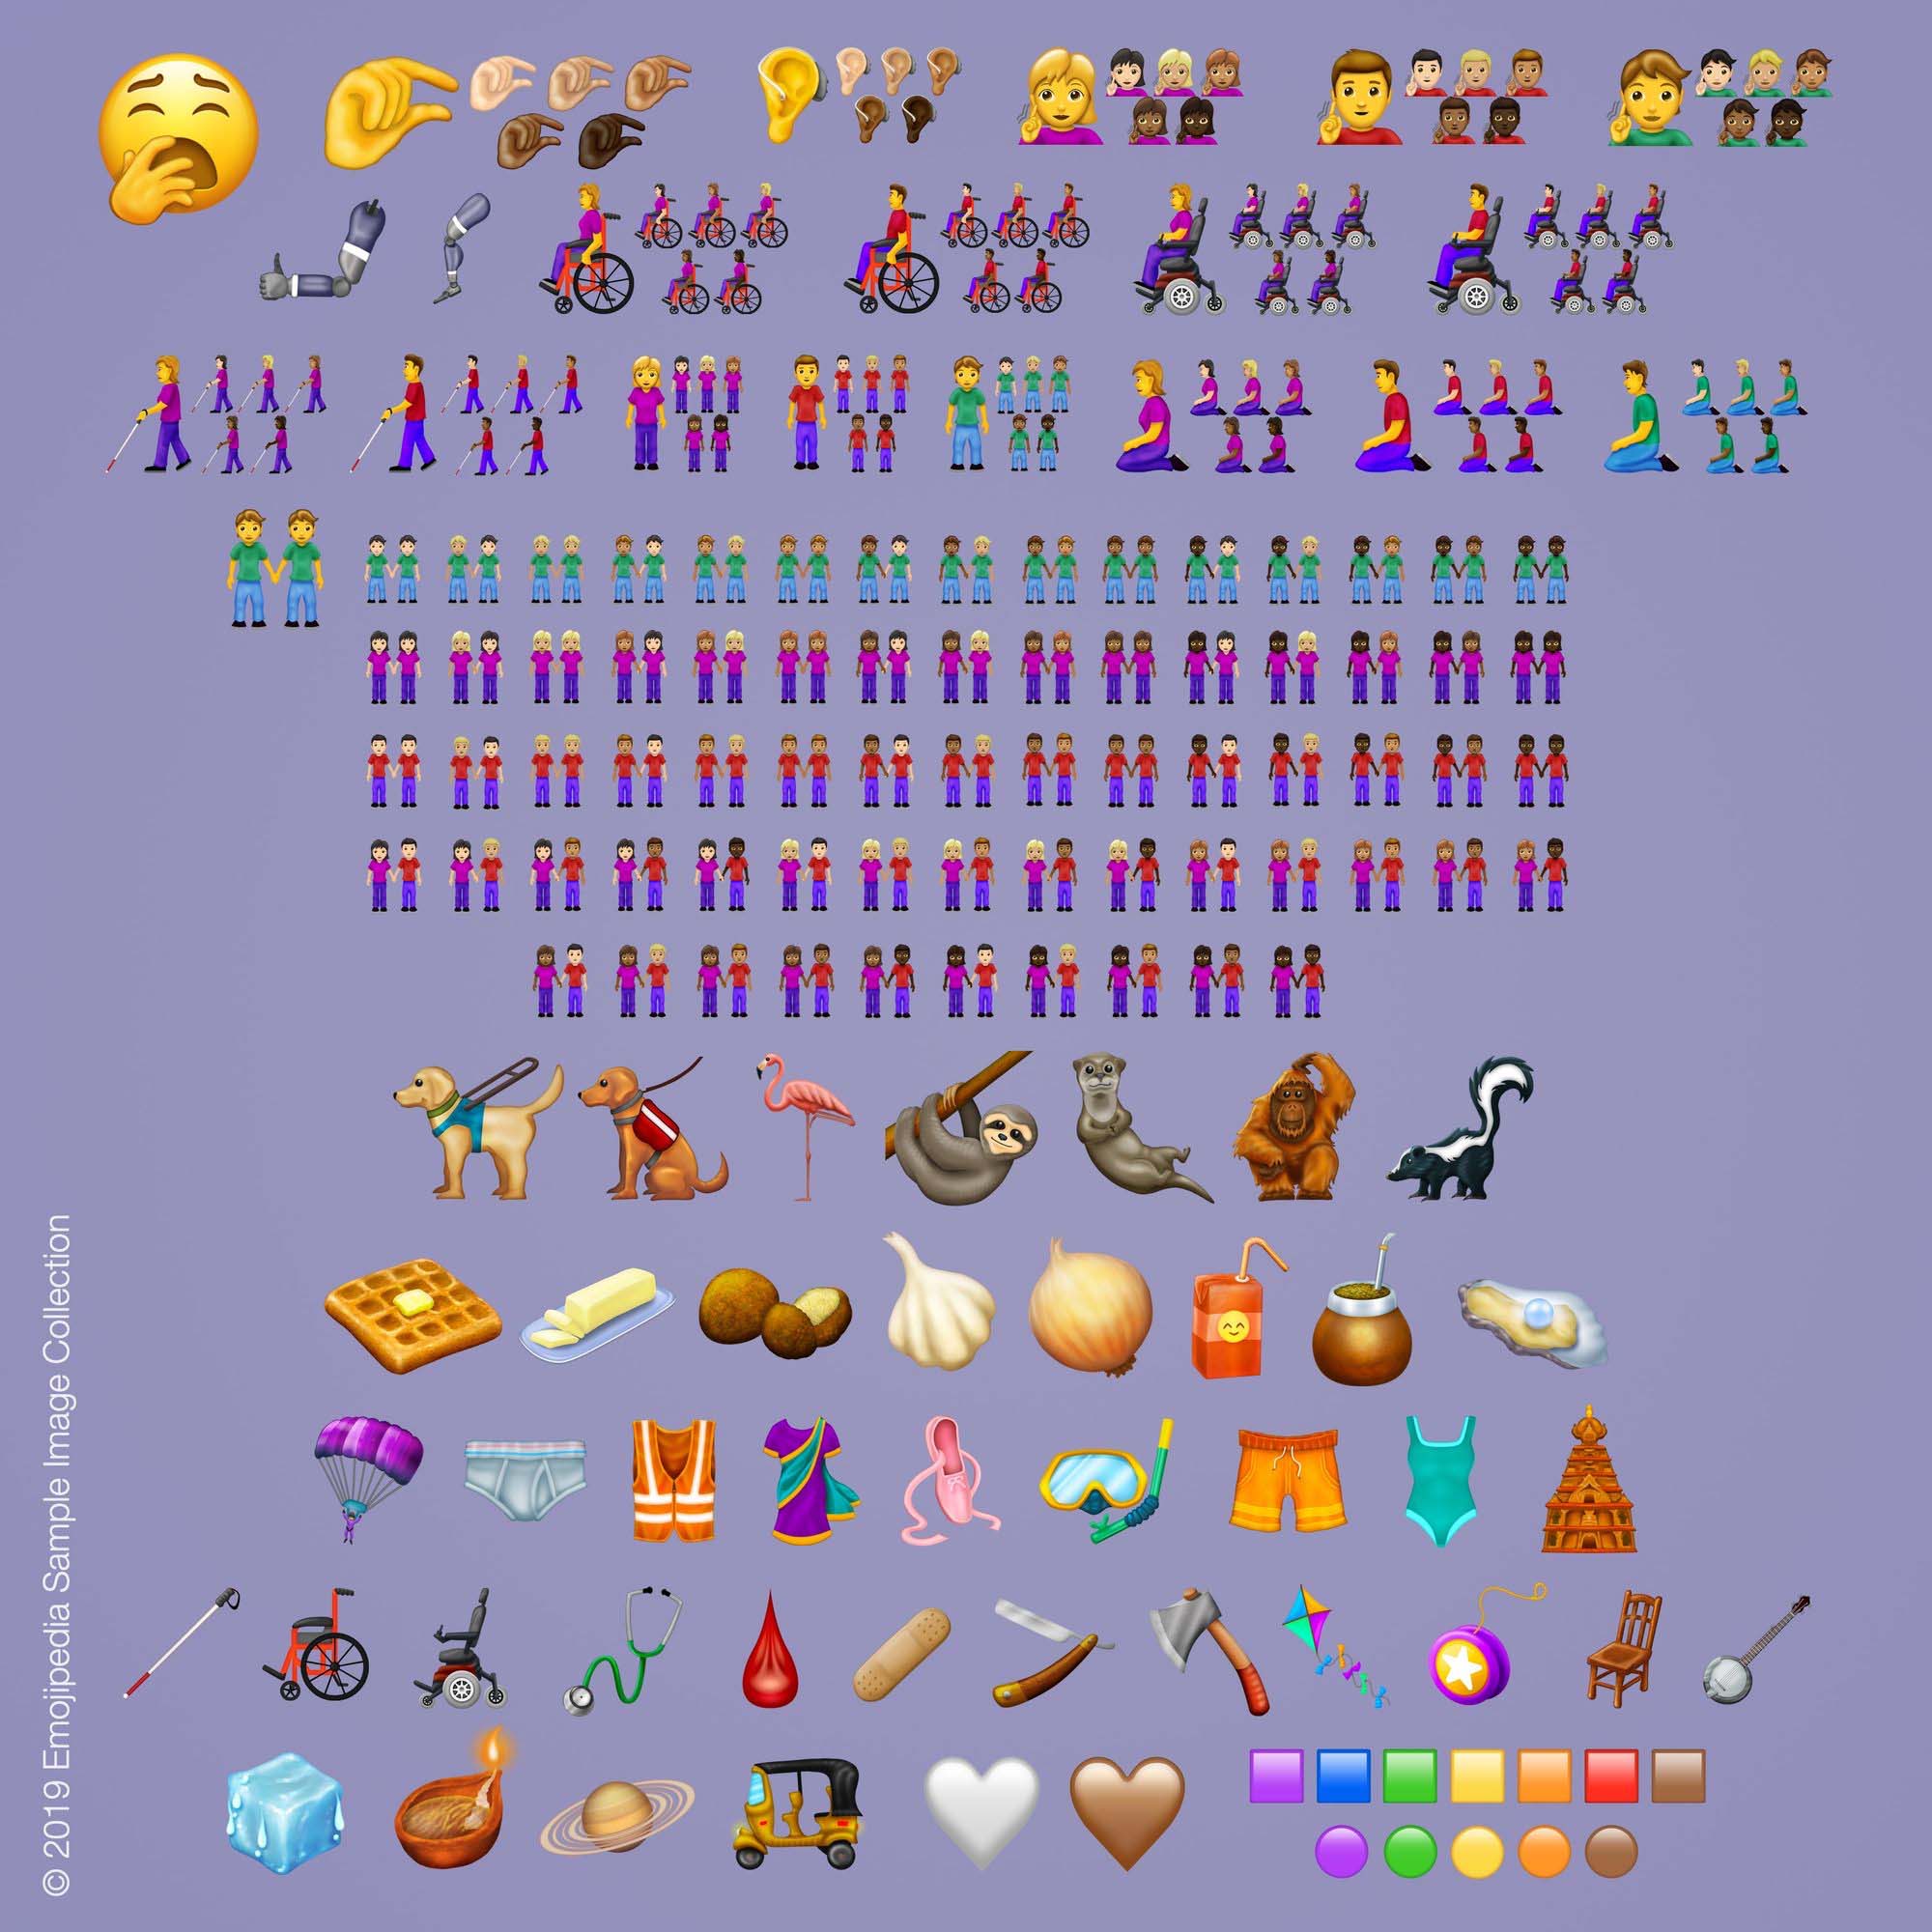 Pôster mostra os destaques dos novos emojis para 2019